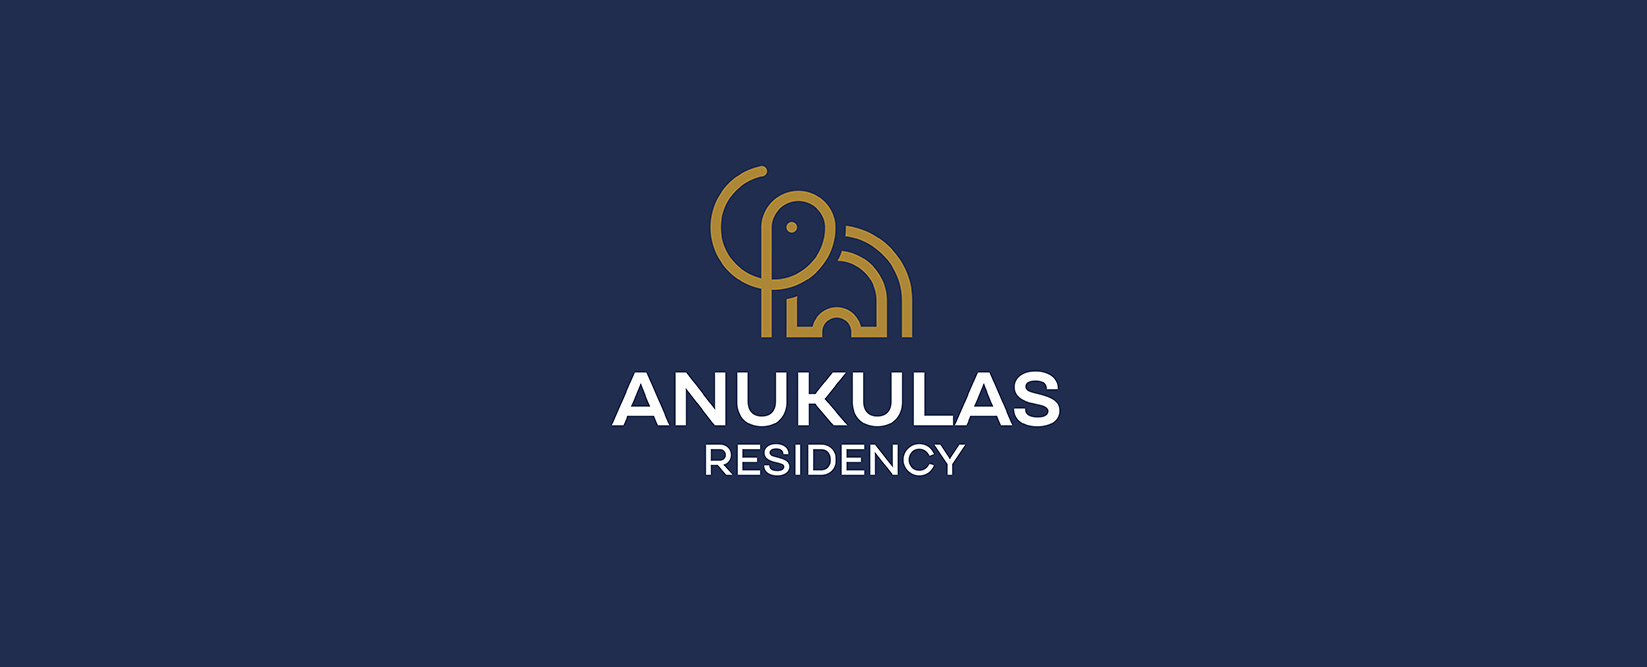 anukulas-logo